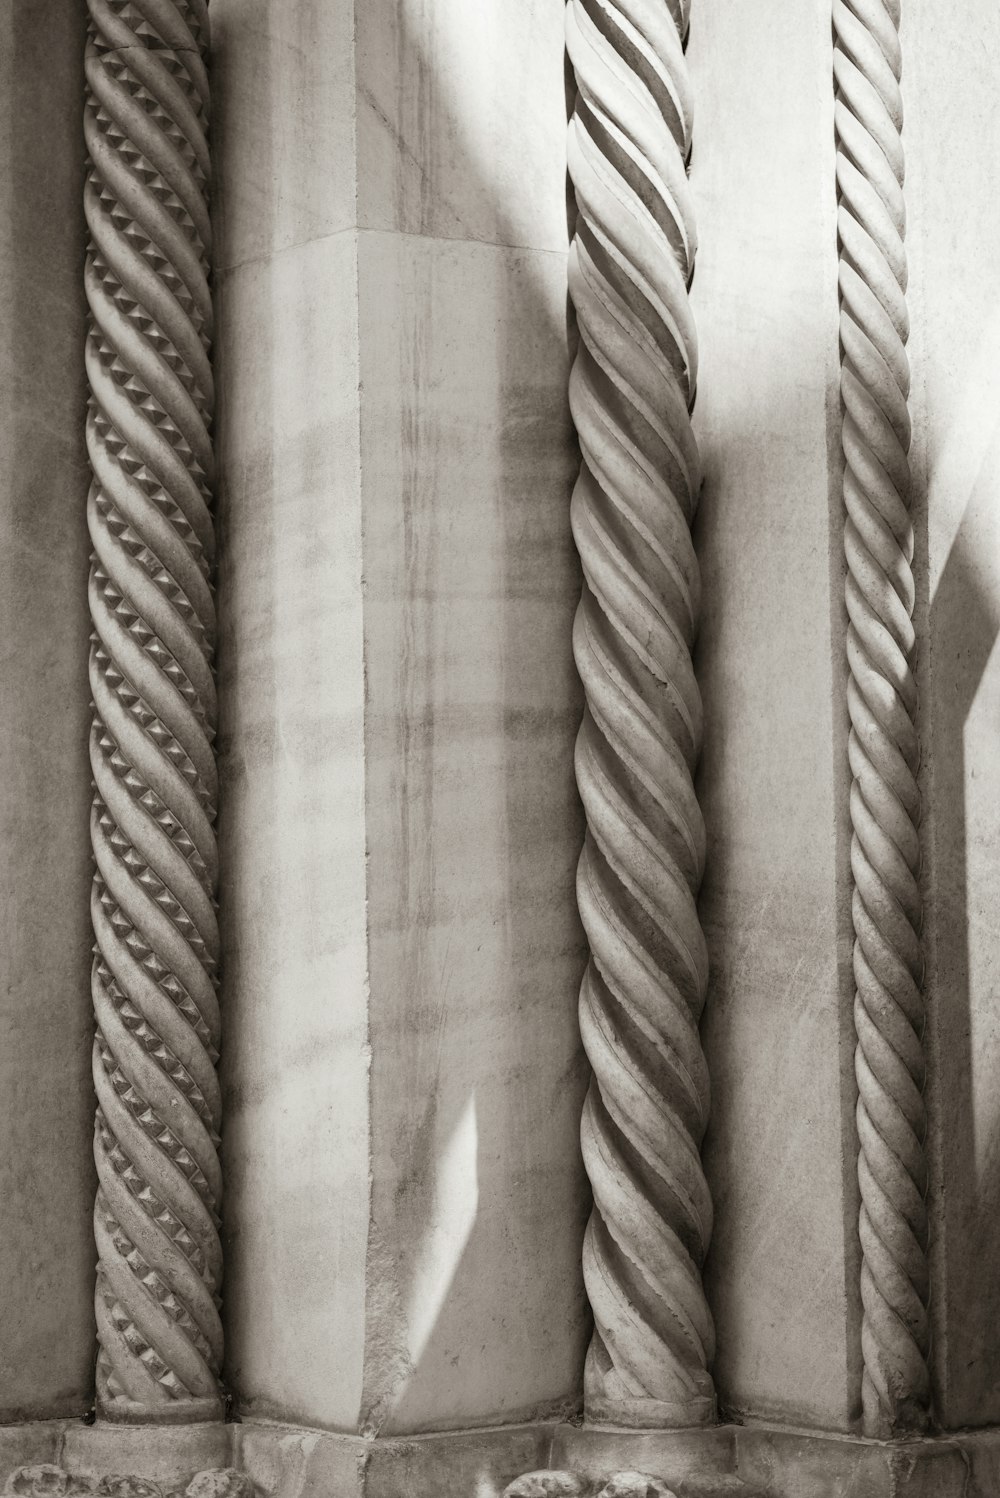 Una foto en blanco y negro de una fila de pilares